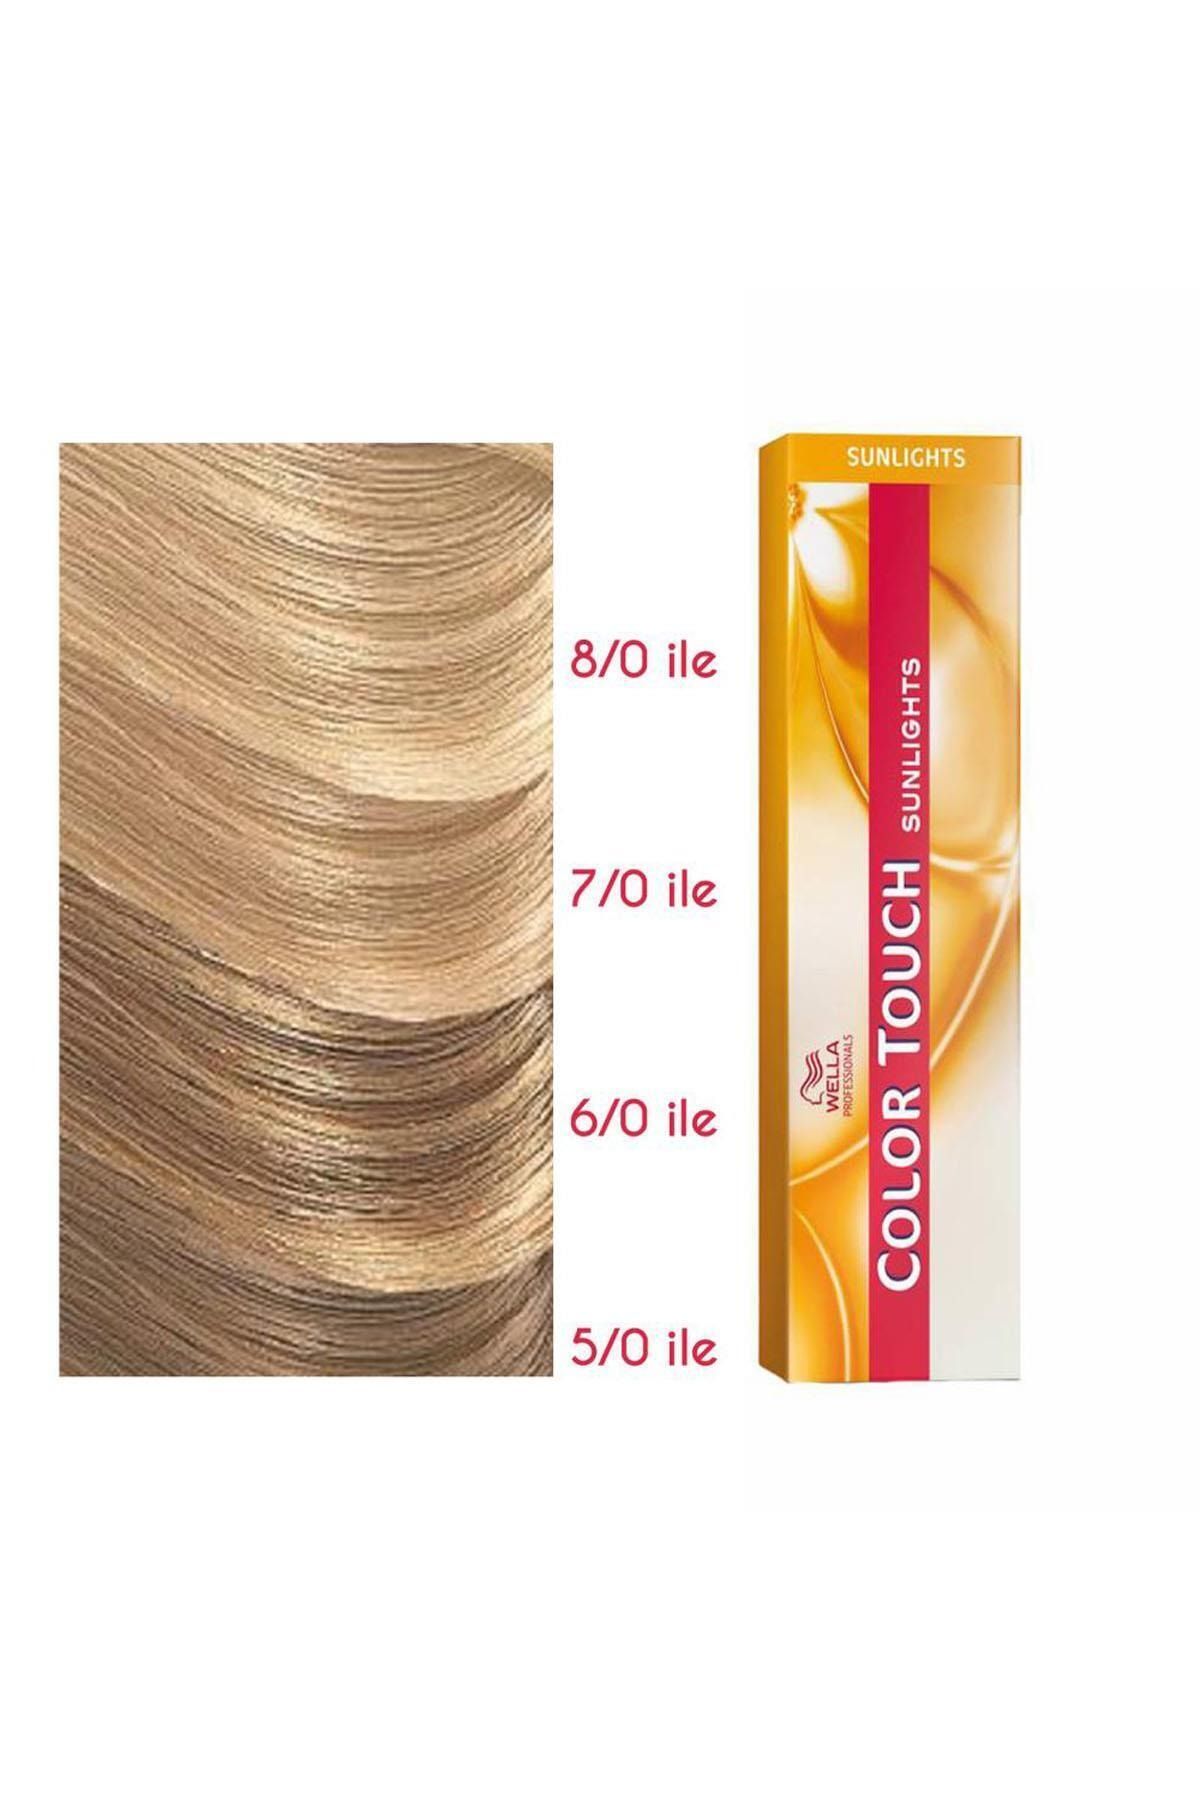 Wella Color Touch Sunlight Saç Boyası /36 Altın Viyole 60ml